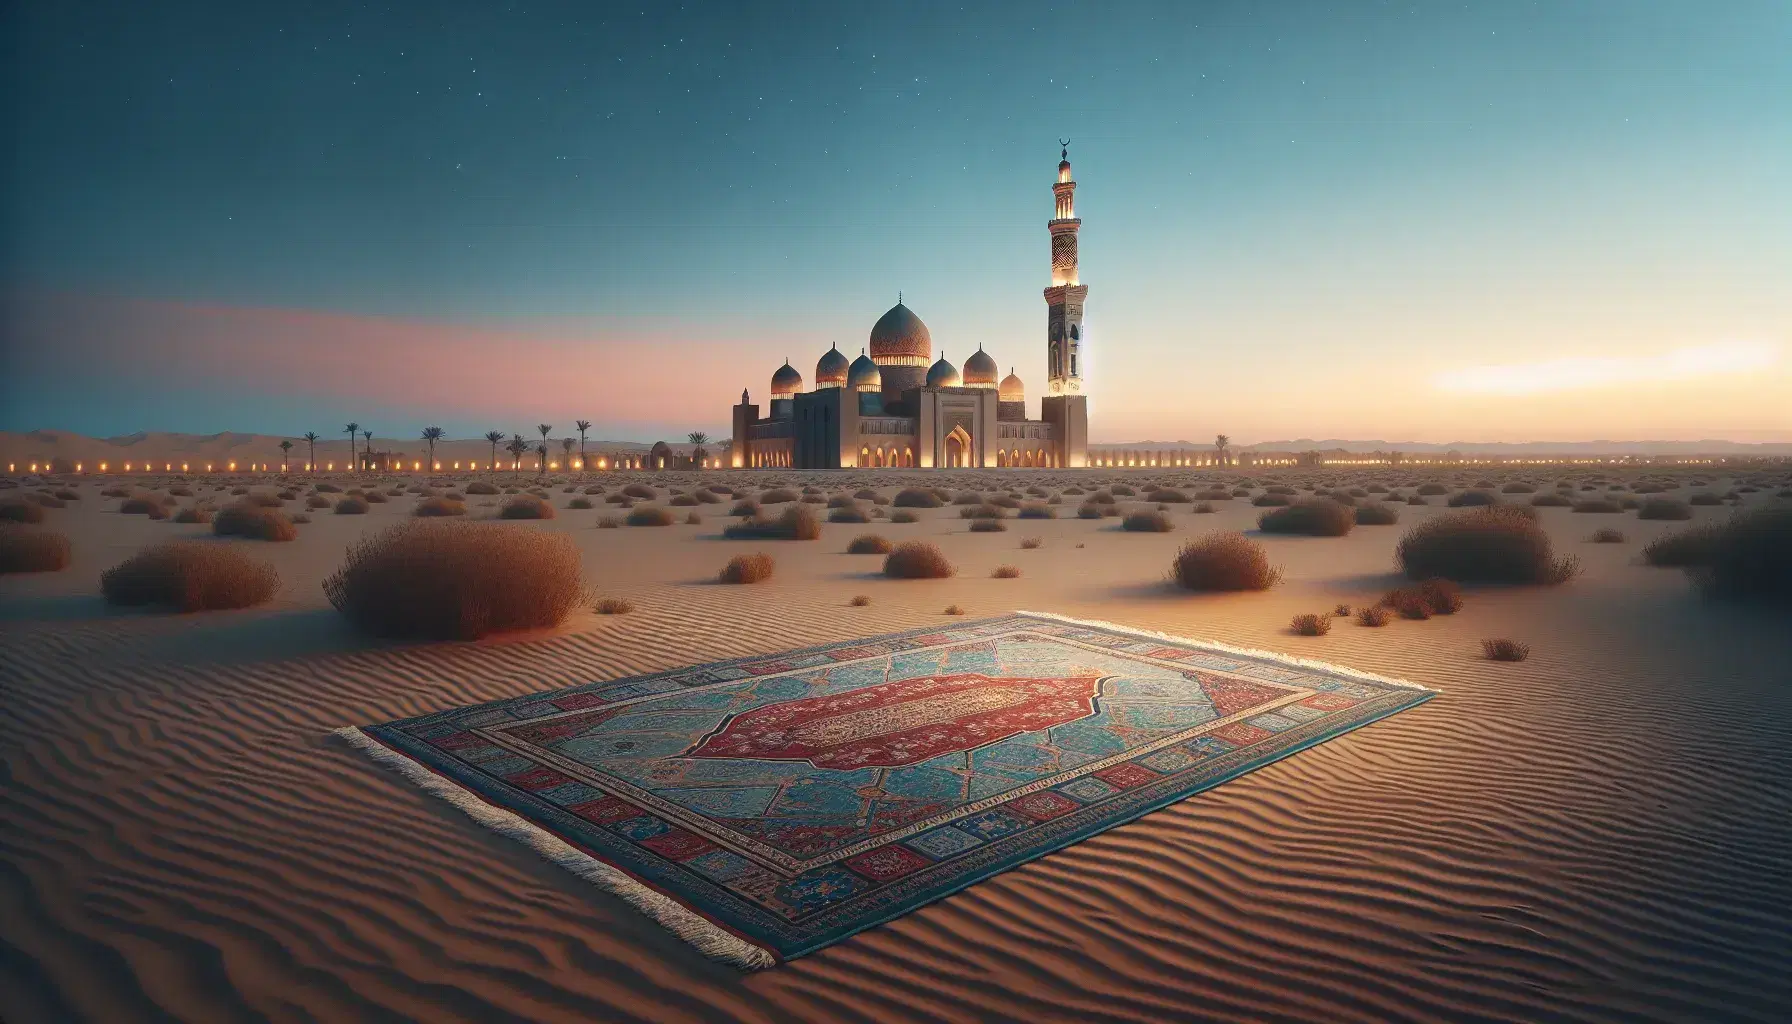 Tappeto da preghiera con motivi geometrici su terreno sabbioso, moschea con minareto e mezzaluna dorata sullo sfondo al tramonto, cielo stellato e palme.